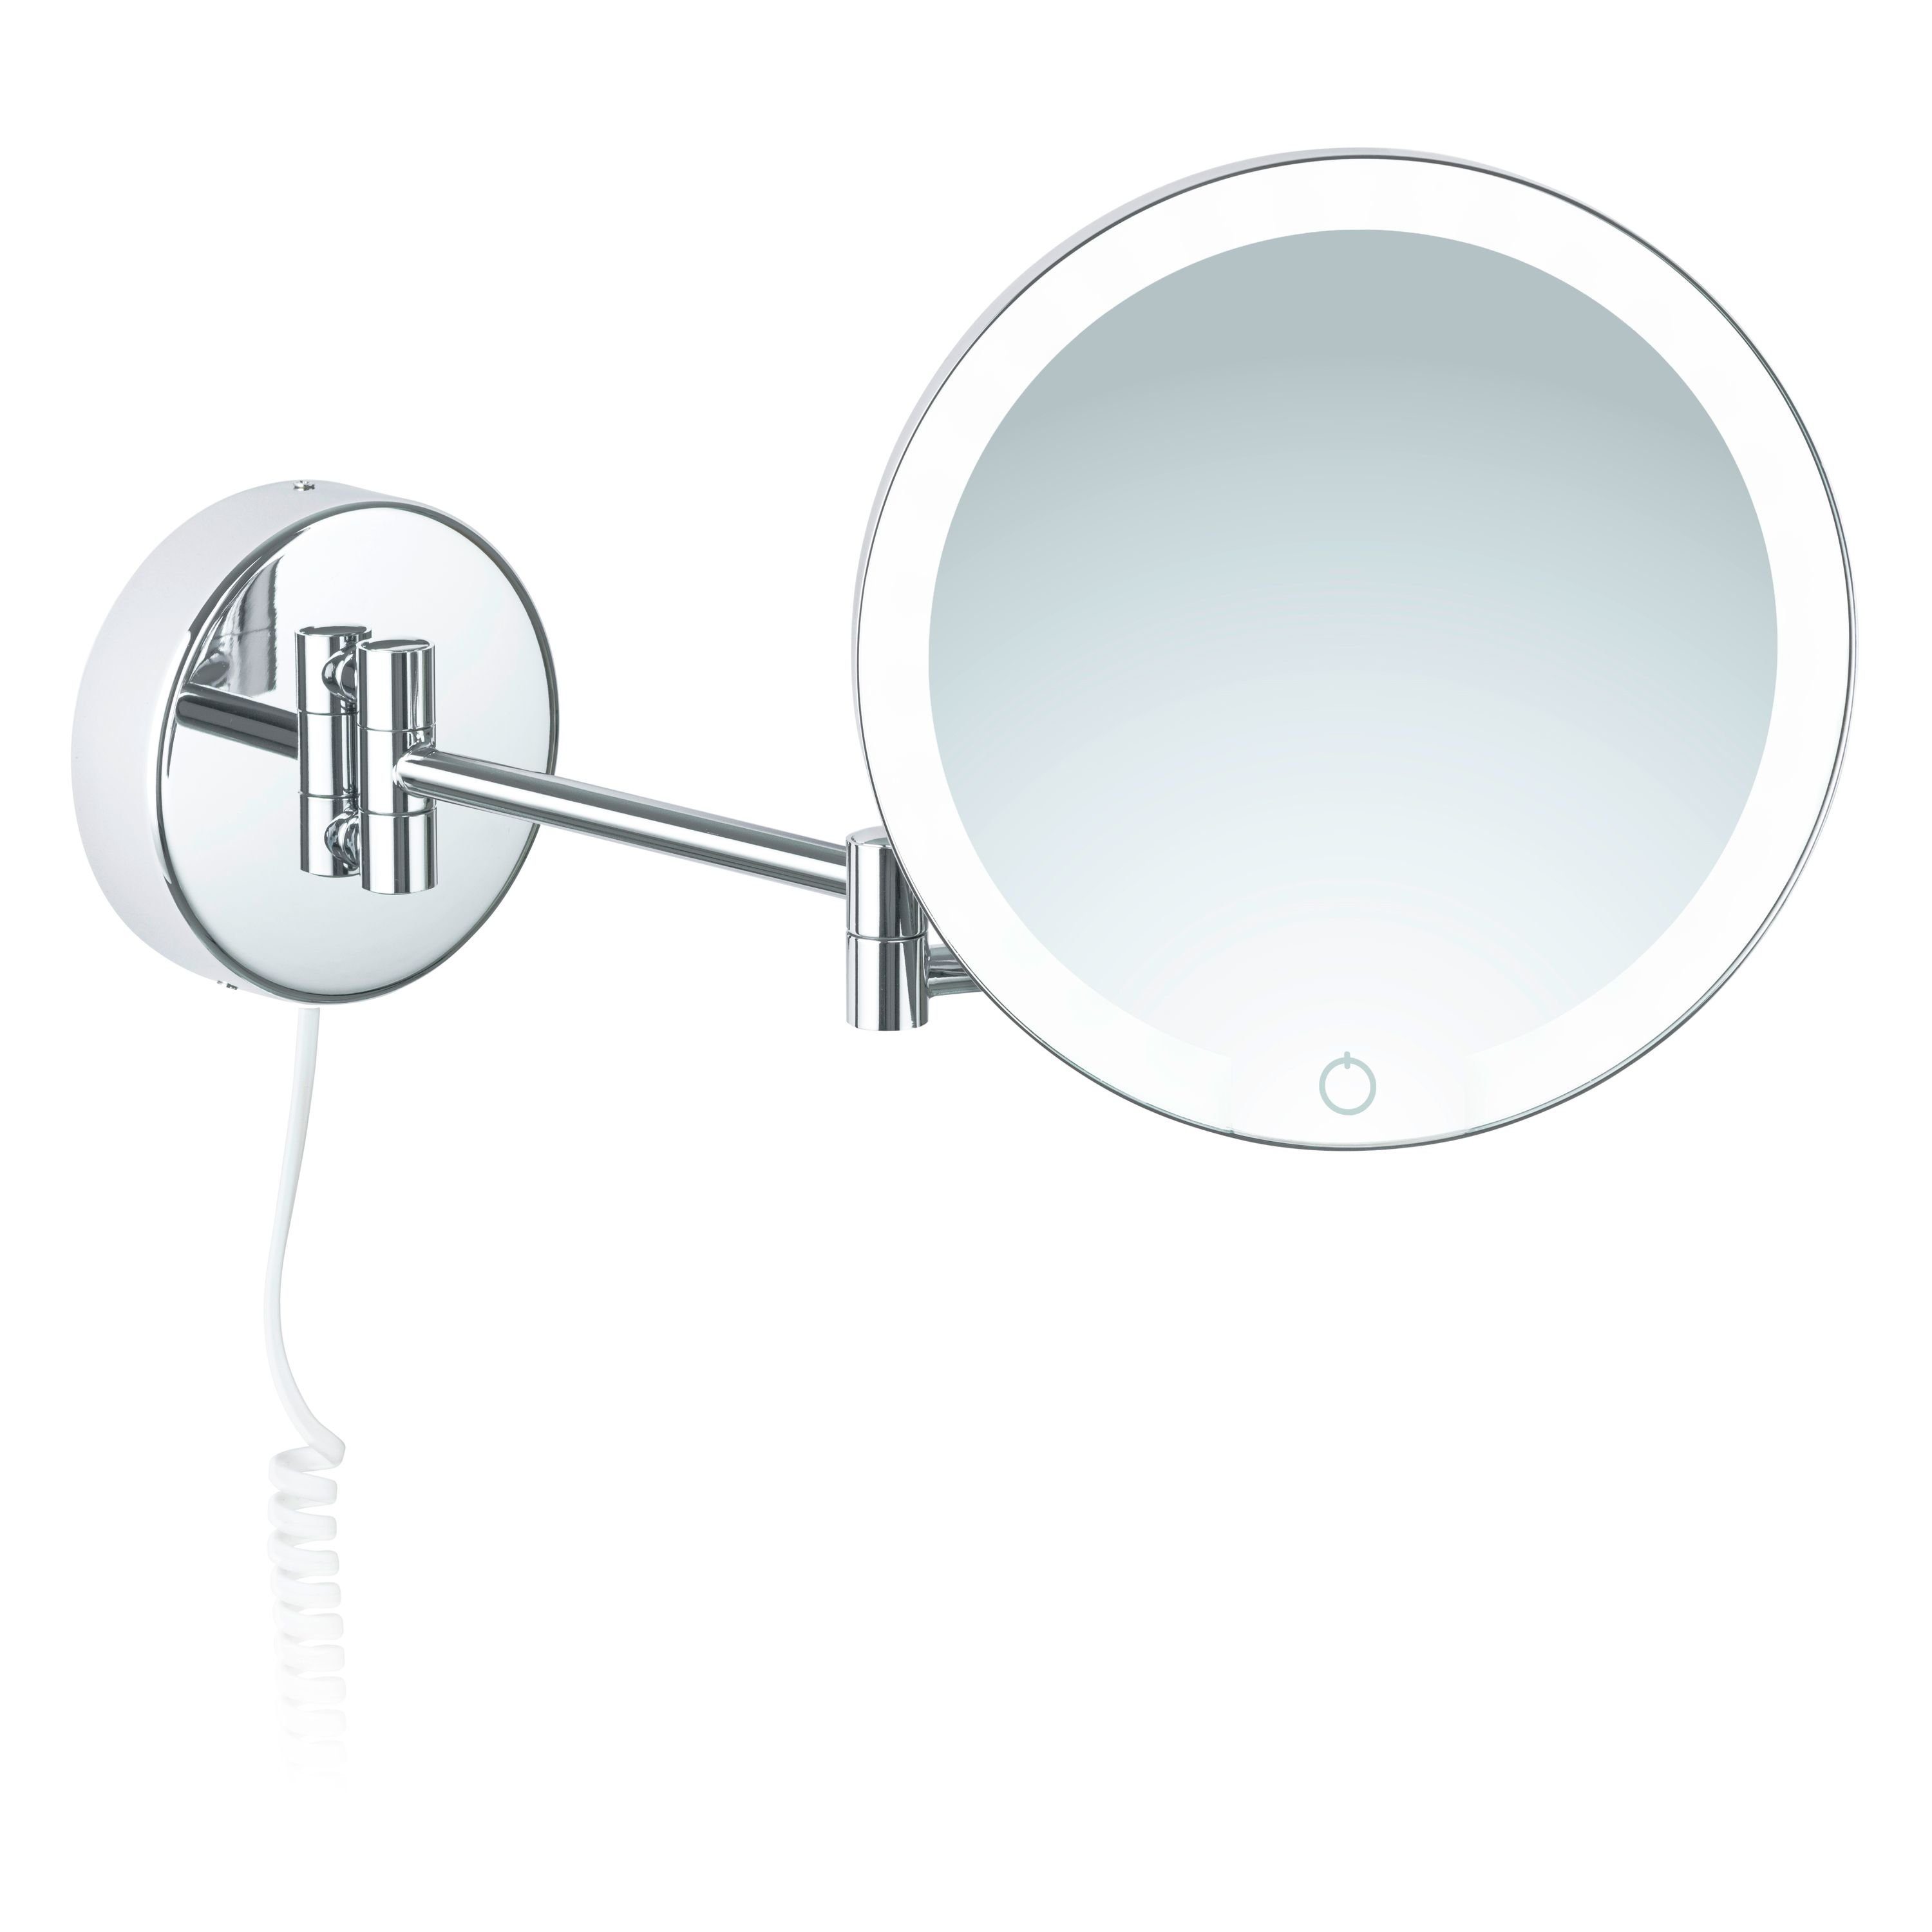 Siena, Auto-off Libaro Kabel Kosmetikspiegel weißes Dimmer Vergrößerung 7x LED Kosmetikspiegel